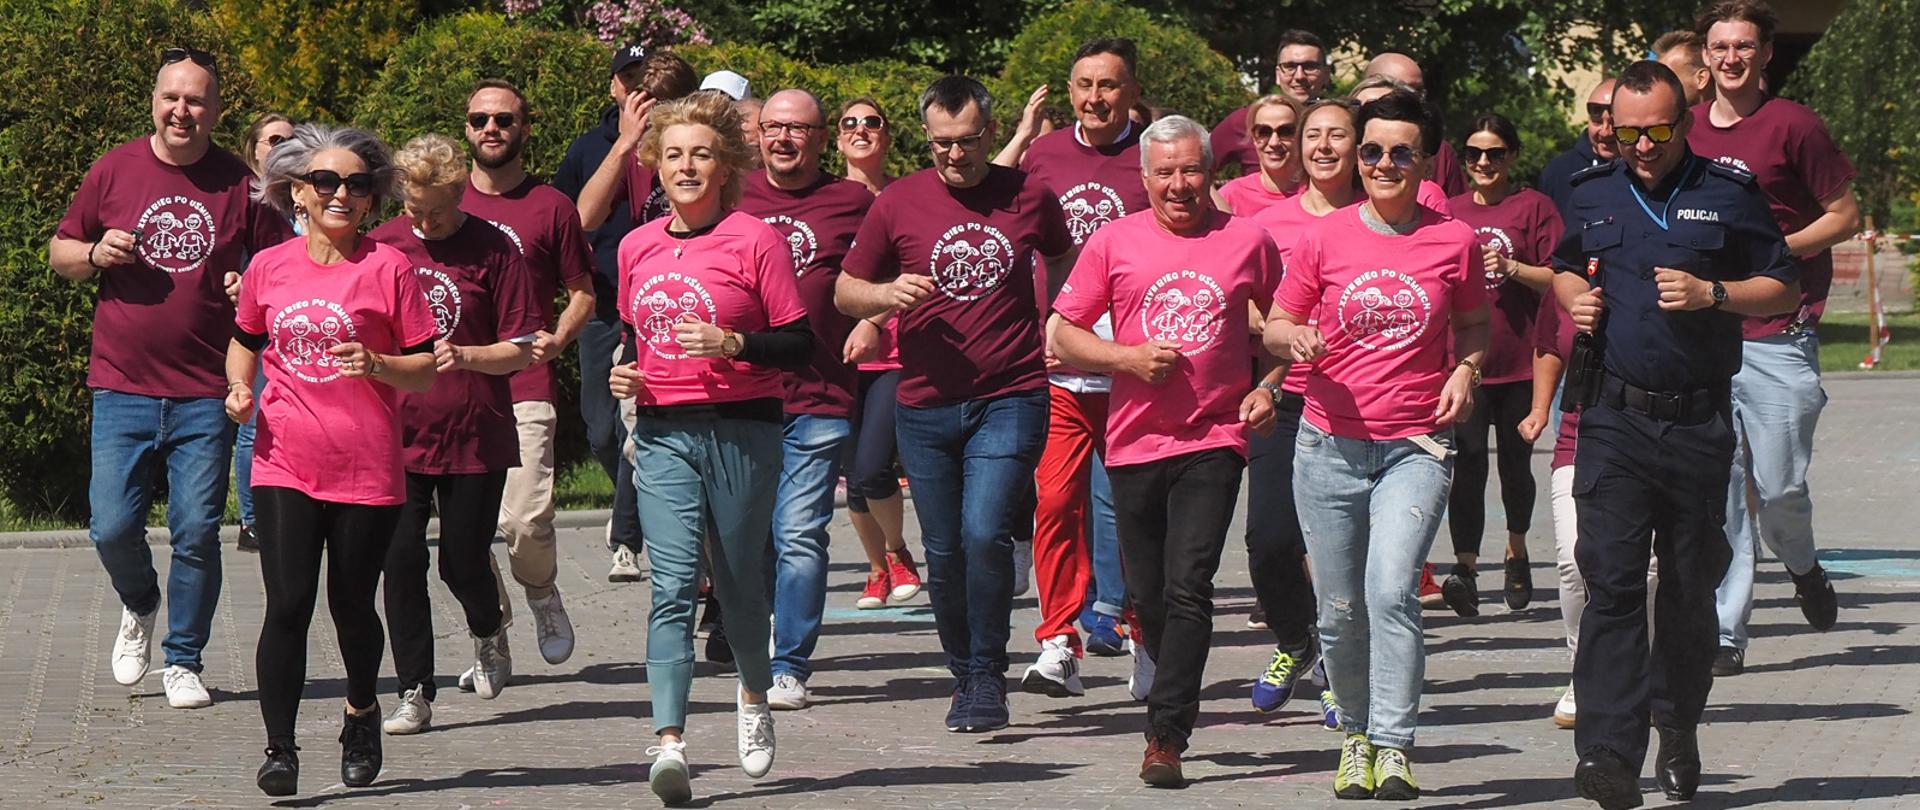 Zdjęcie przedstawia grupę biegnących osób. Uczestnicy biegu ubrani są w różowe koszulki z białym logo "Biegu po uśmiech".